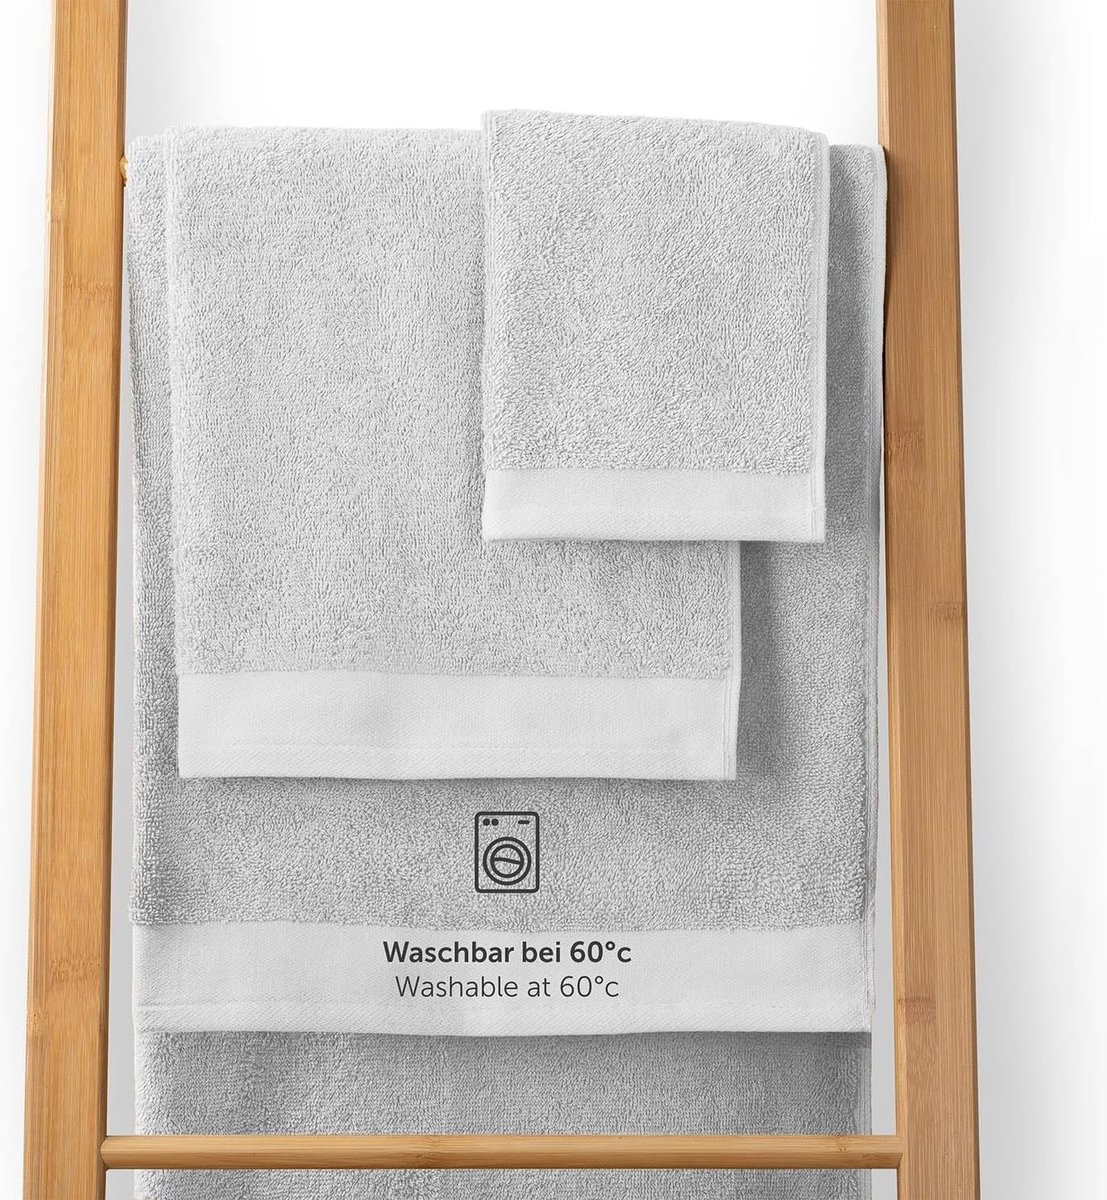 Handdoekenset 2 badhanddoeken 70x140 + 2 handdoeken 50x100 zacht en absorberend 100% katoen Oeko-Tex 100 gecertificeerd wit